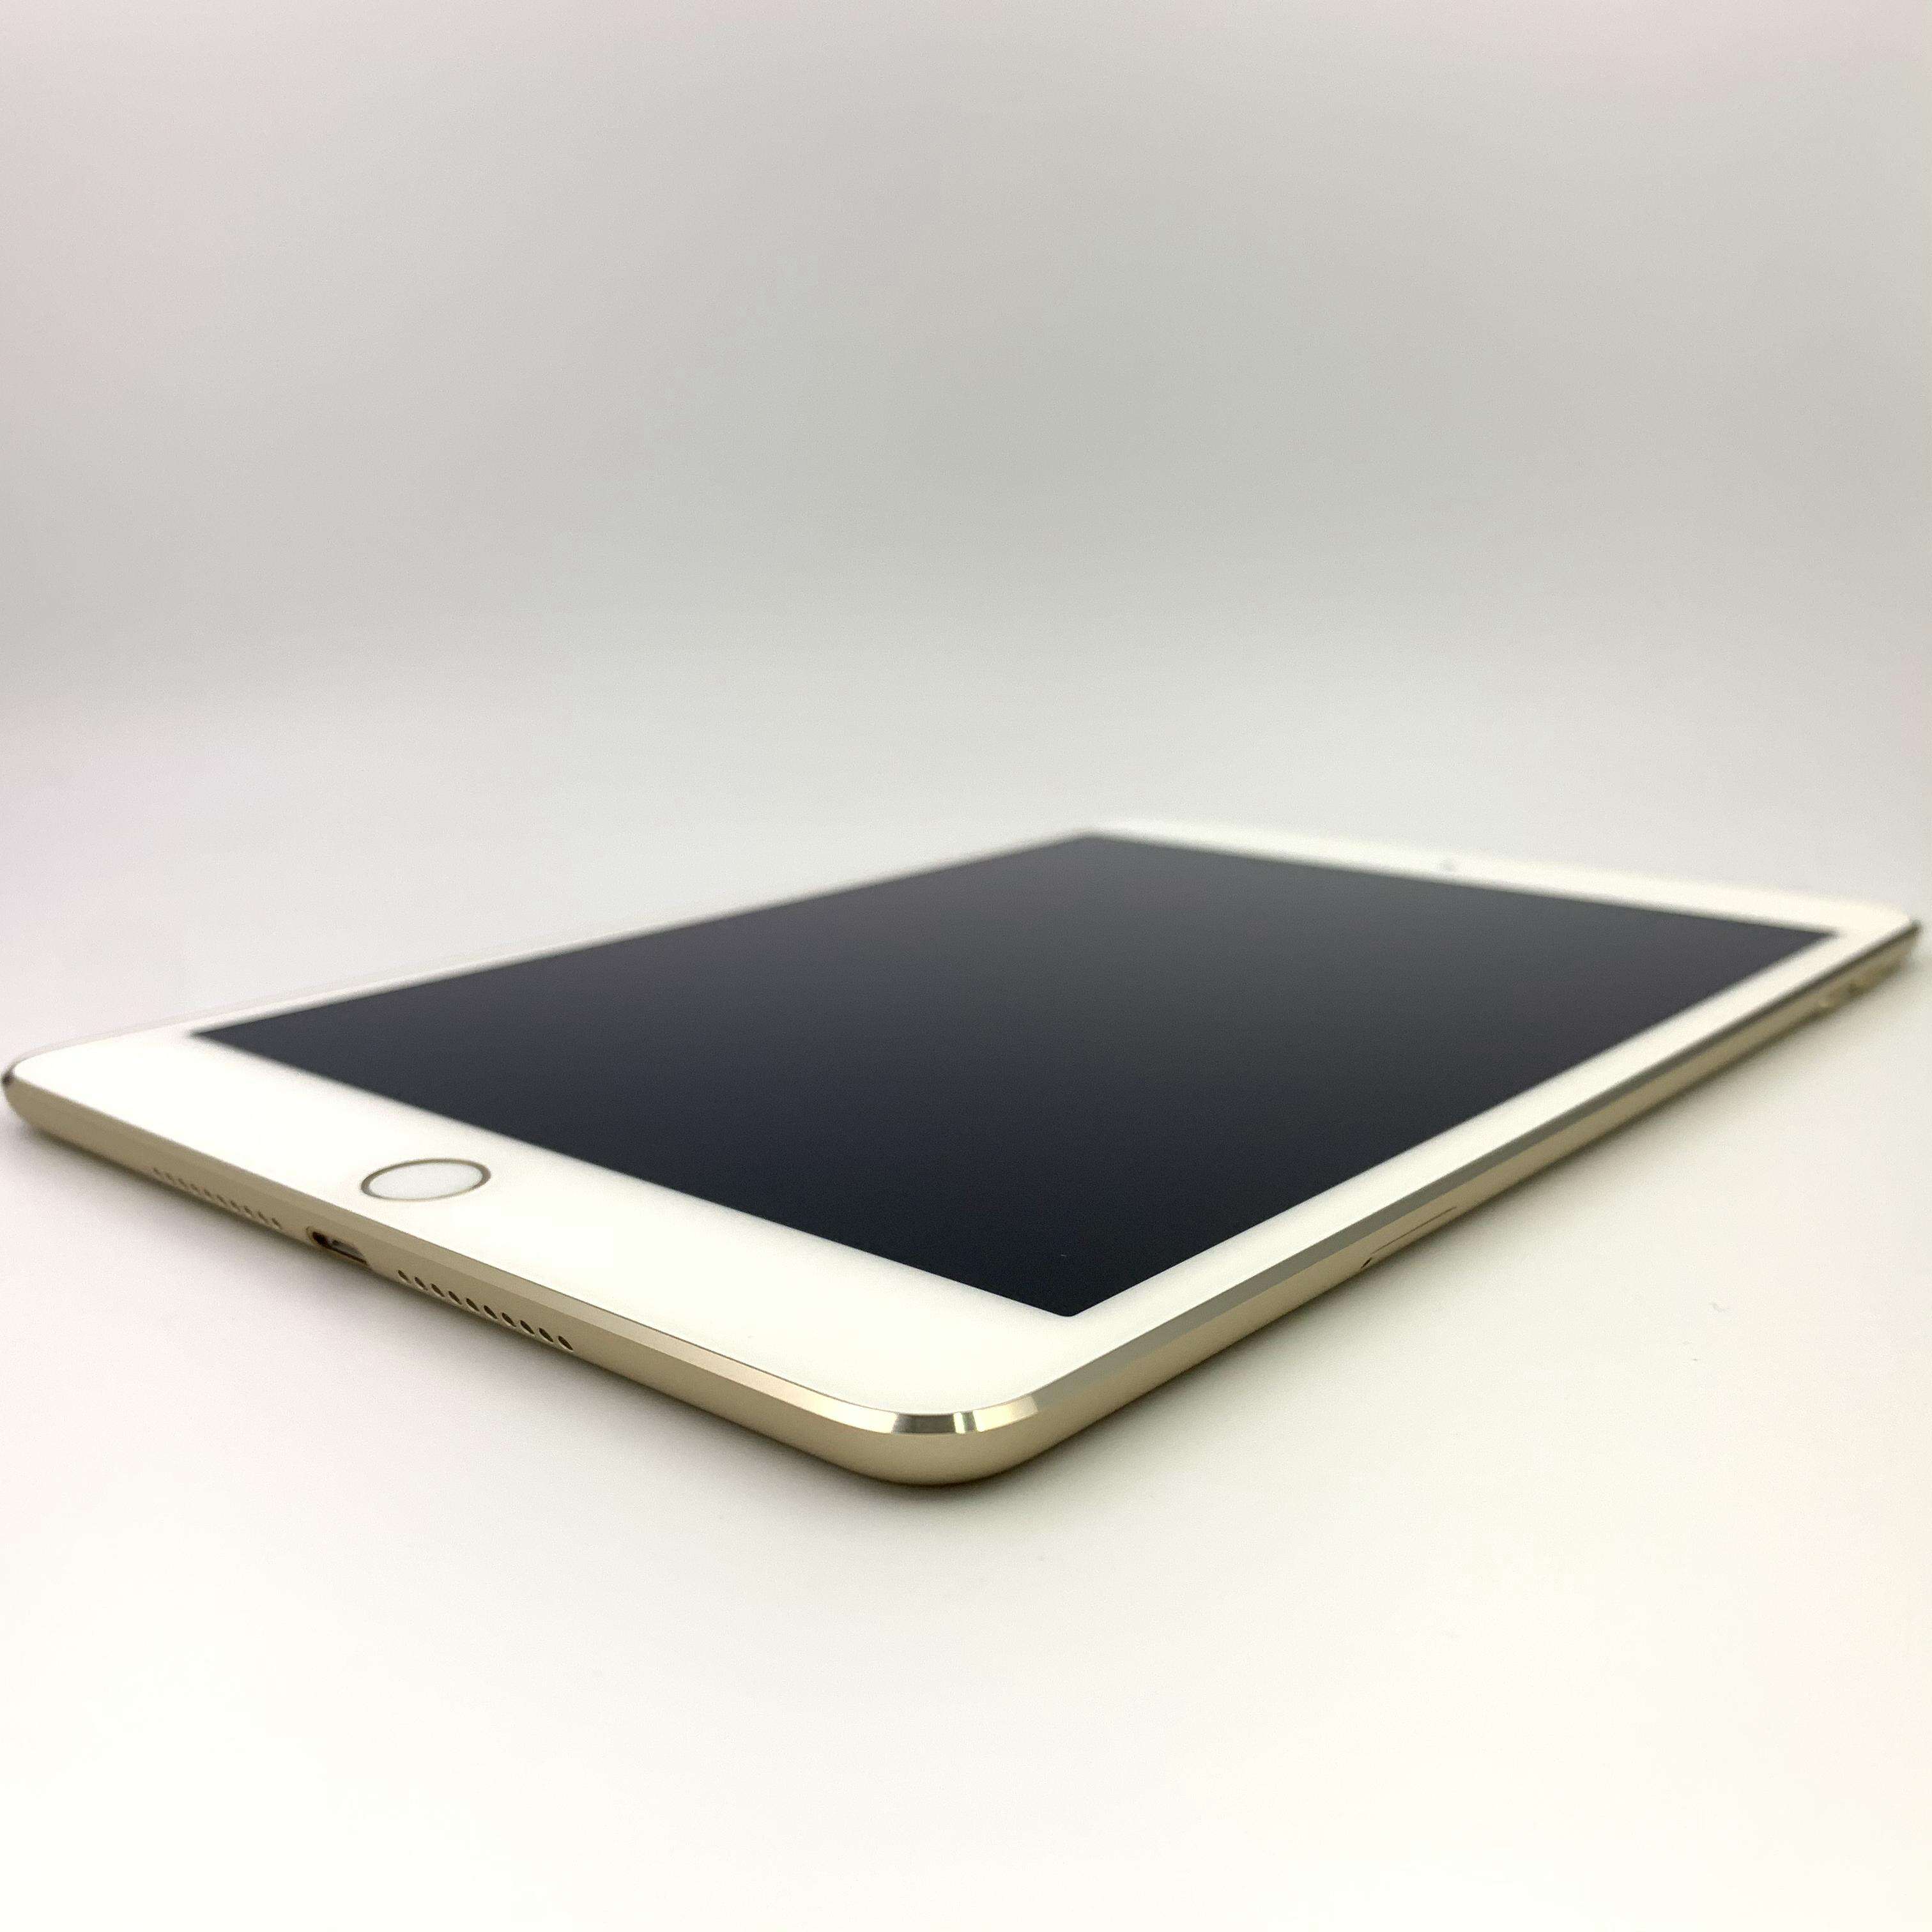 iPad mini 4 128G Cellular版 移动4G/联通4G/电信4G